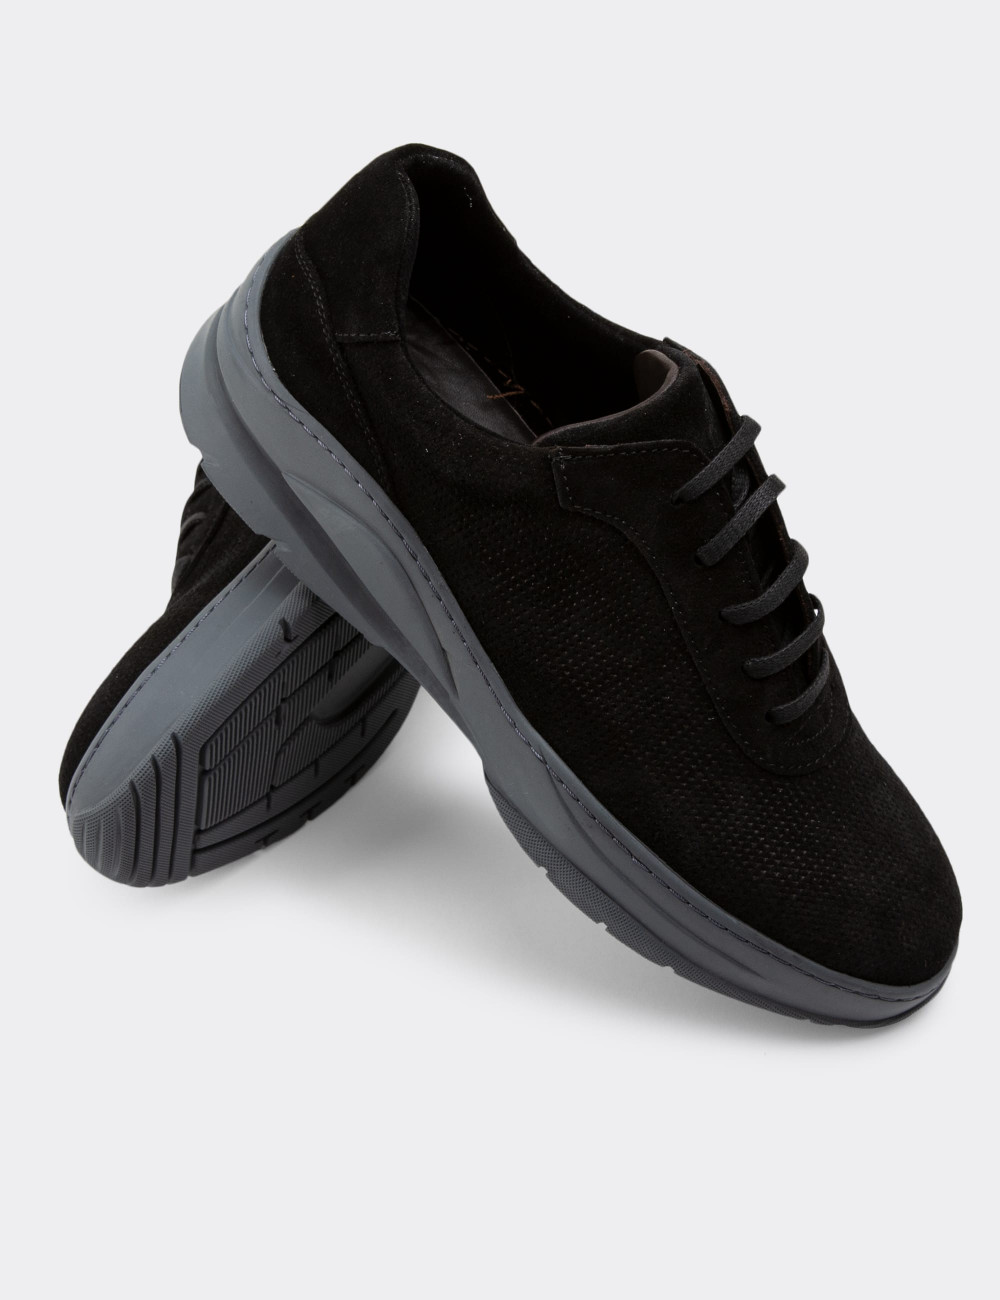 Hakiki Süet Siyah Sneaker Erkek Ayakkabı - 01879MSYHC02